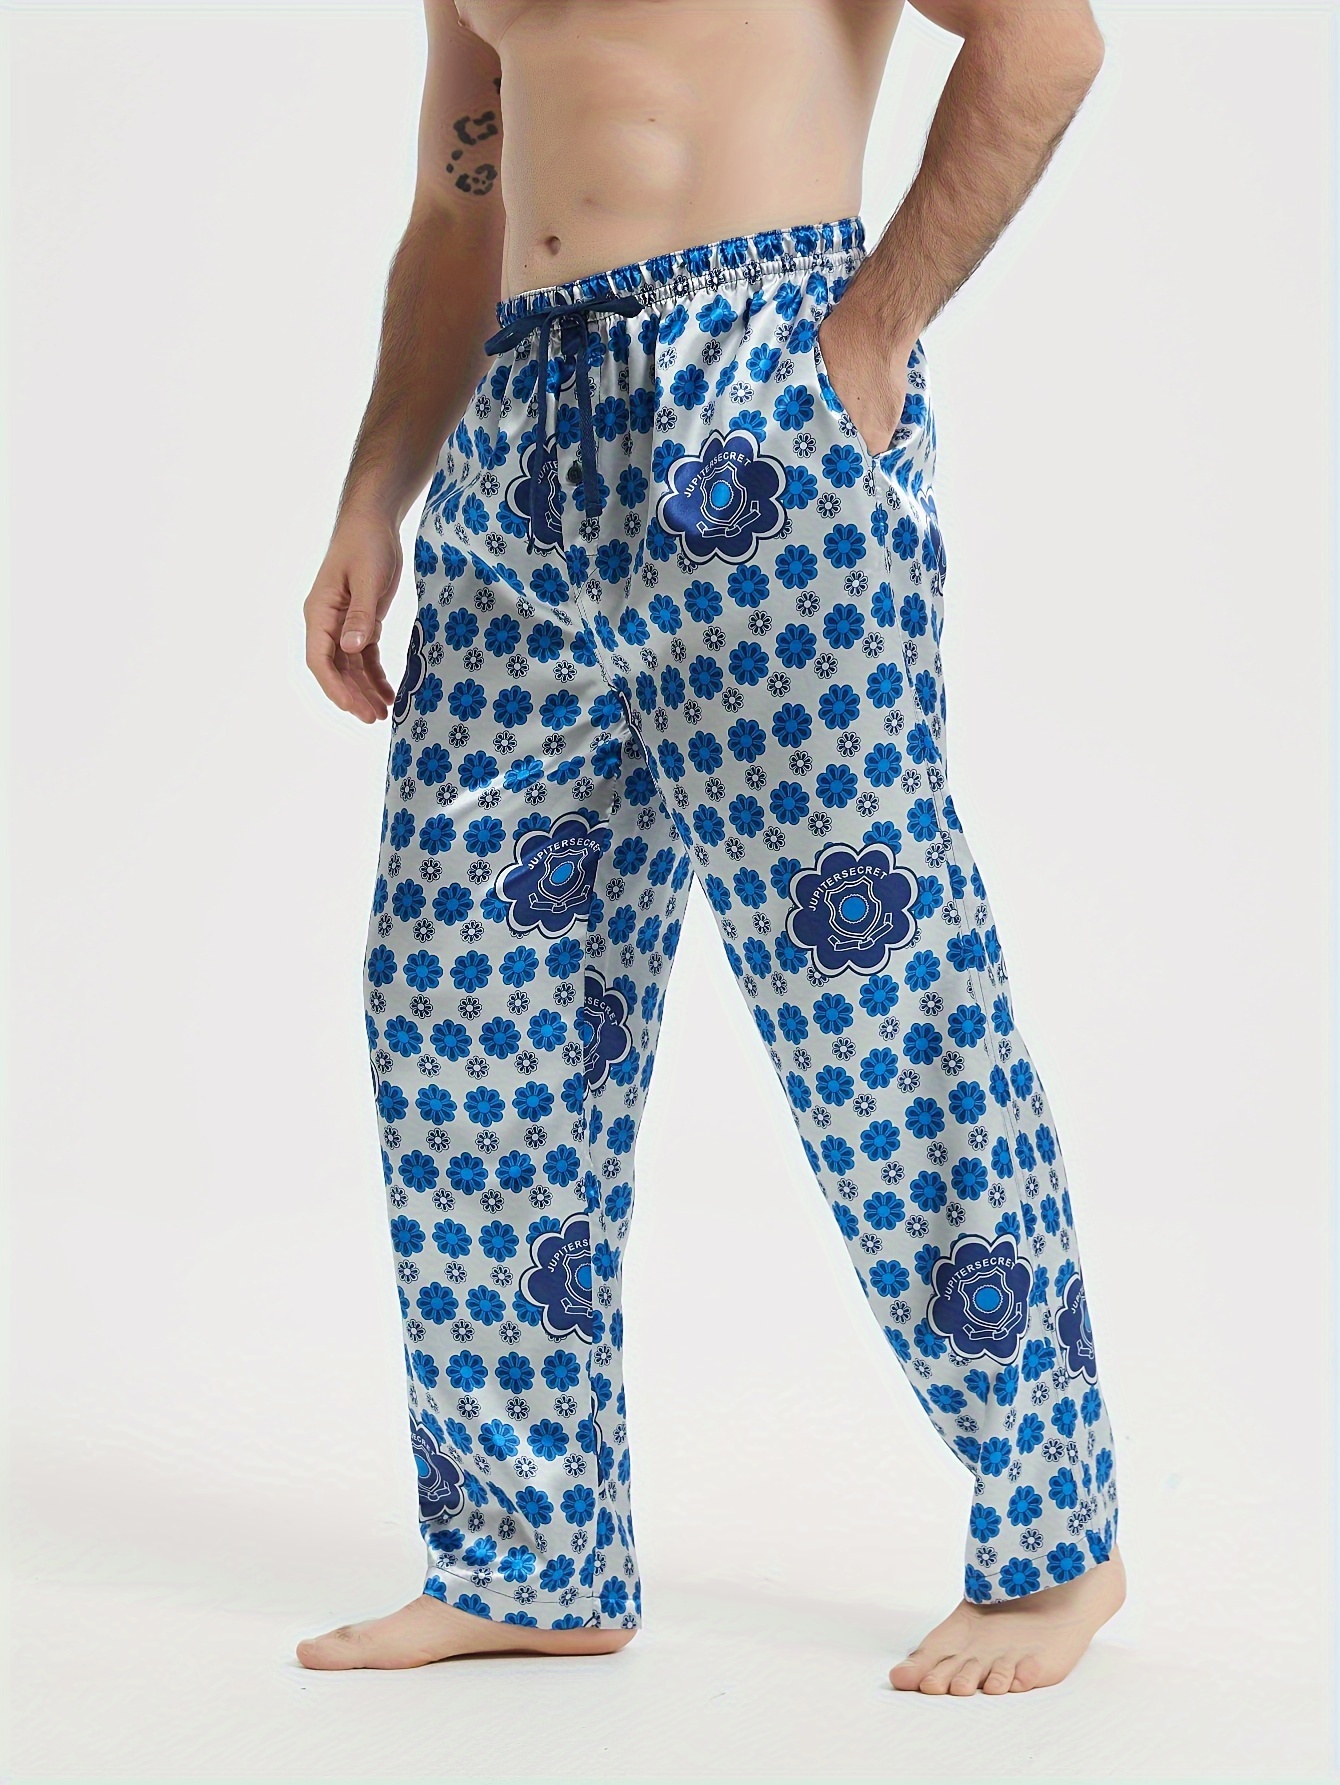 Men Christmas Print Pajama Pants